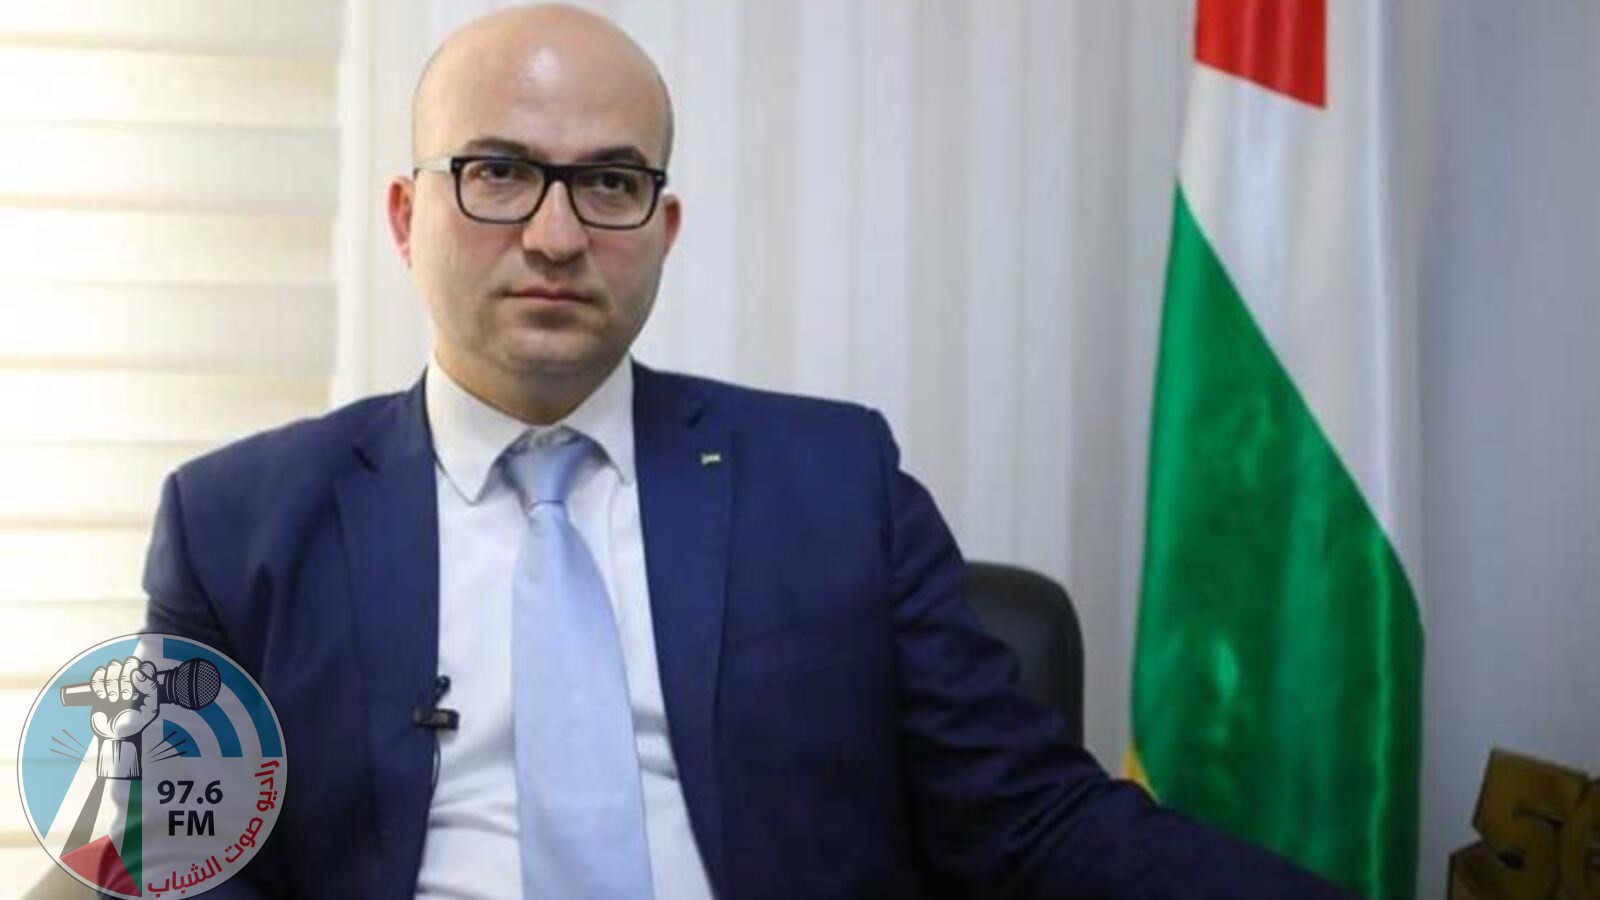 وزير القدس حكومة الاحتلال تتحمل المسوؤلية عن التداعيات الخطيرة لــمسيرة الأعلام